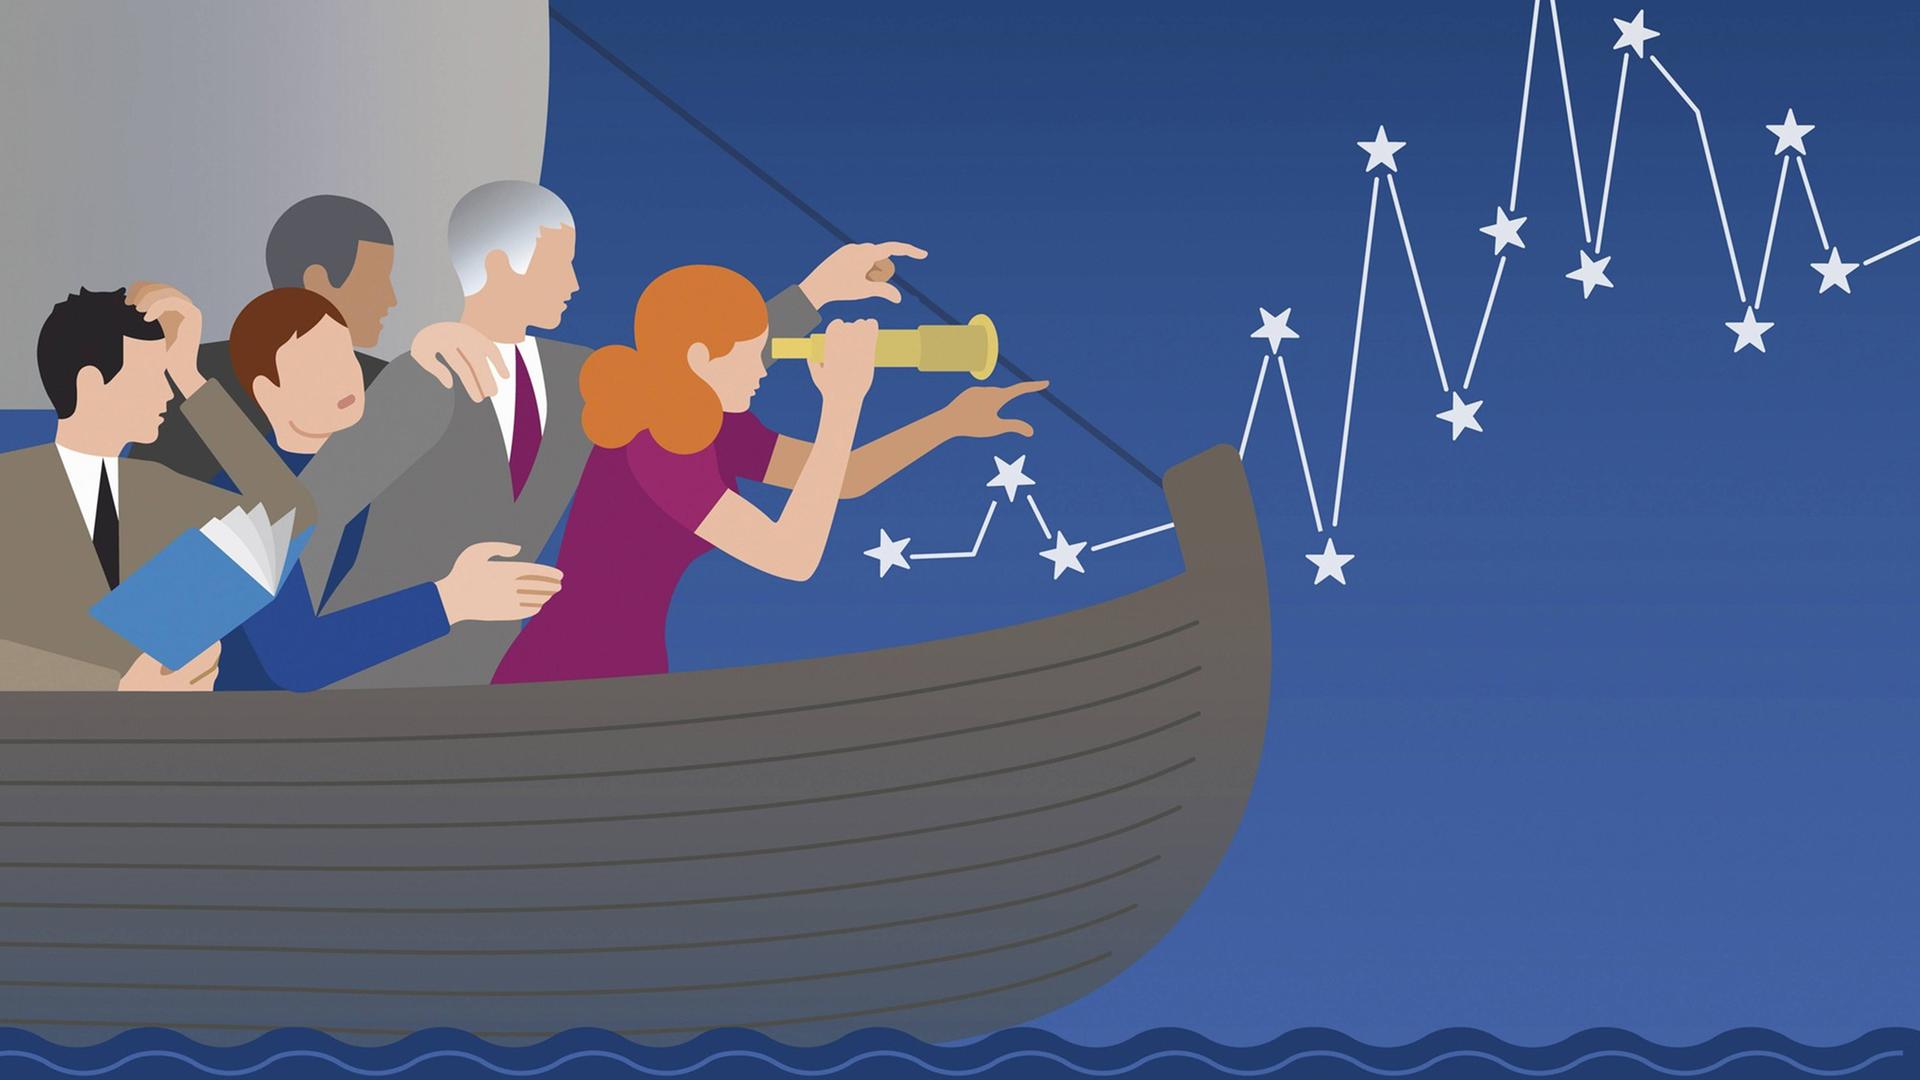 Eine Illustration zeigt Männer auf einem Boot im Meer, die versuchen, sich zu orientieren. Eine Frau gibt die Richtung vor.